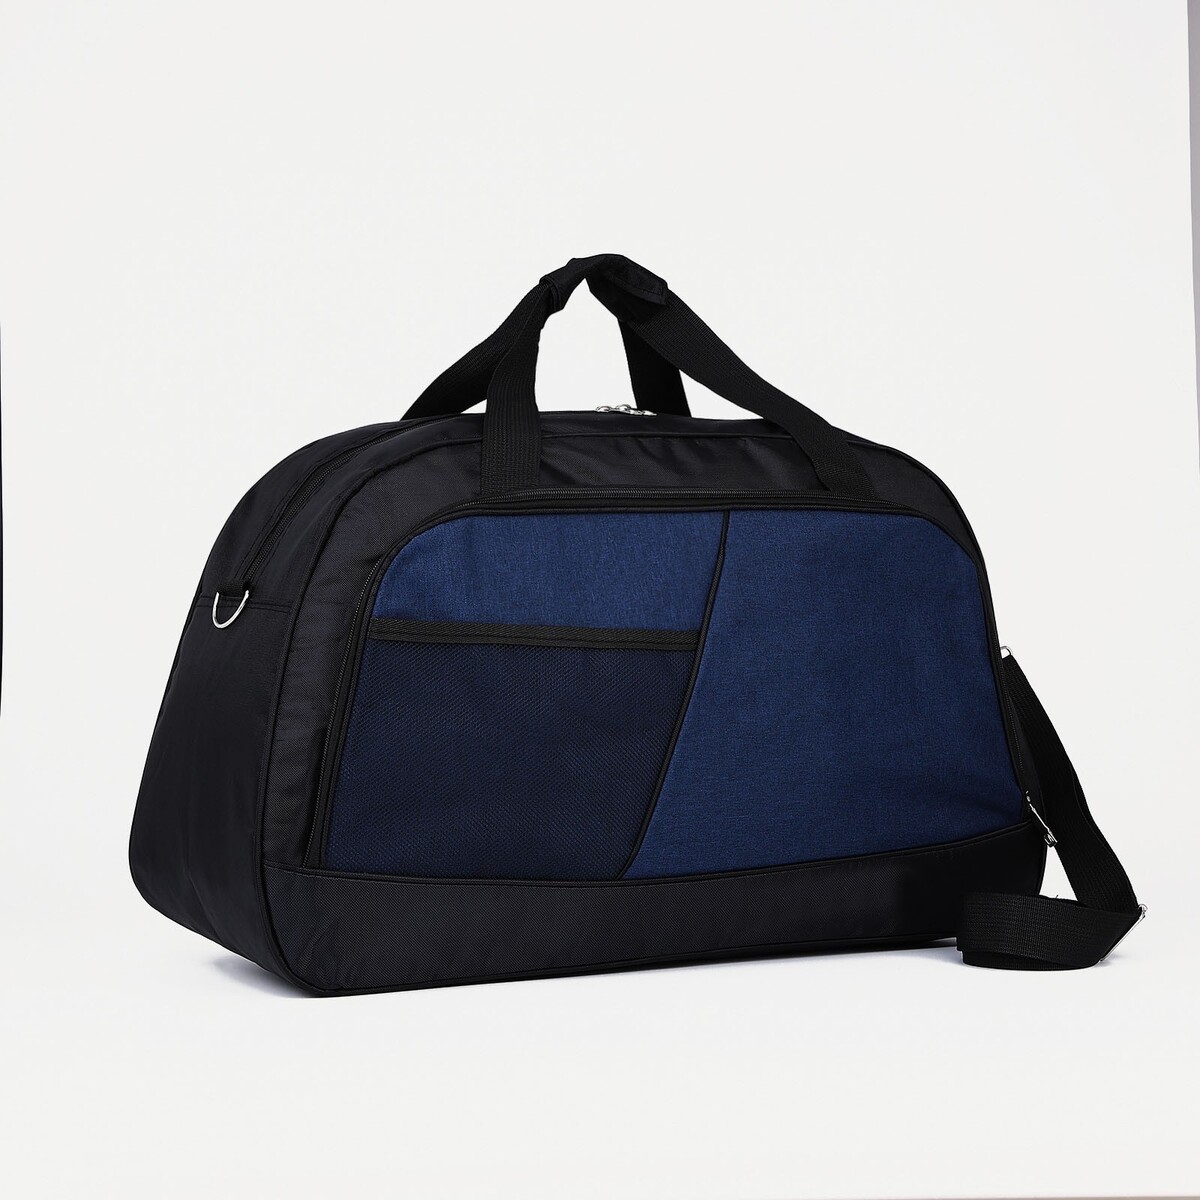 Сумка дорожная на молнии, 2 наружных кармана, длинный ремень, цвет черный/синий сумка спортивная на молнии регулируемый ремень синий